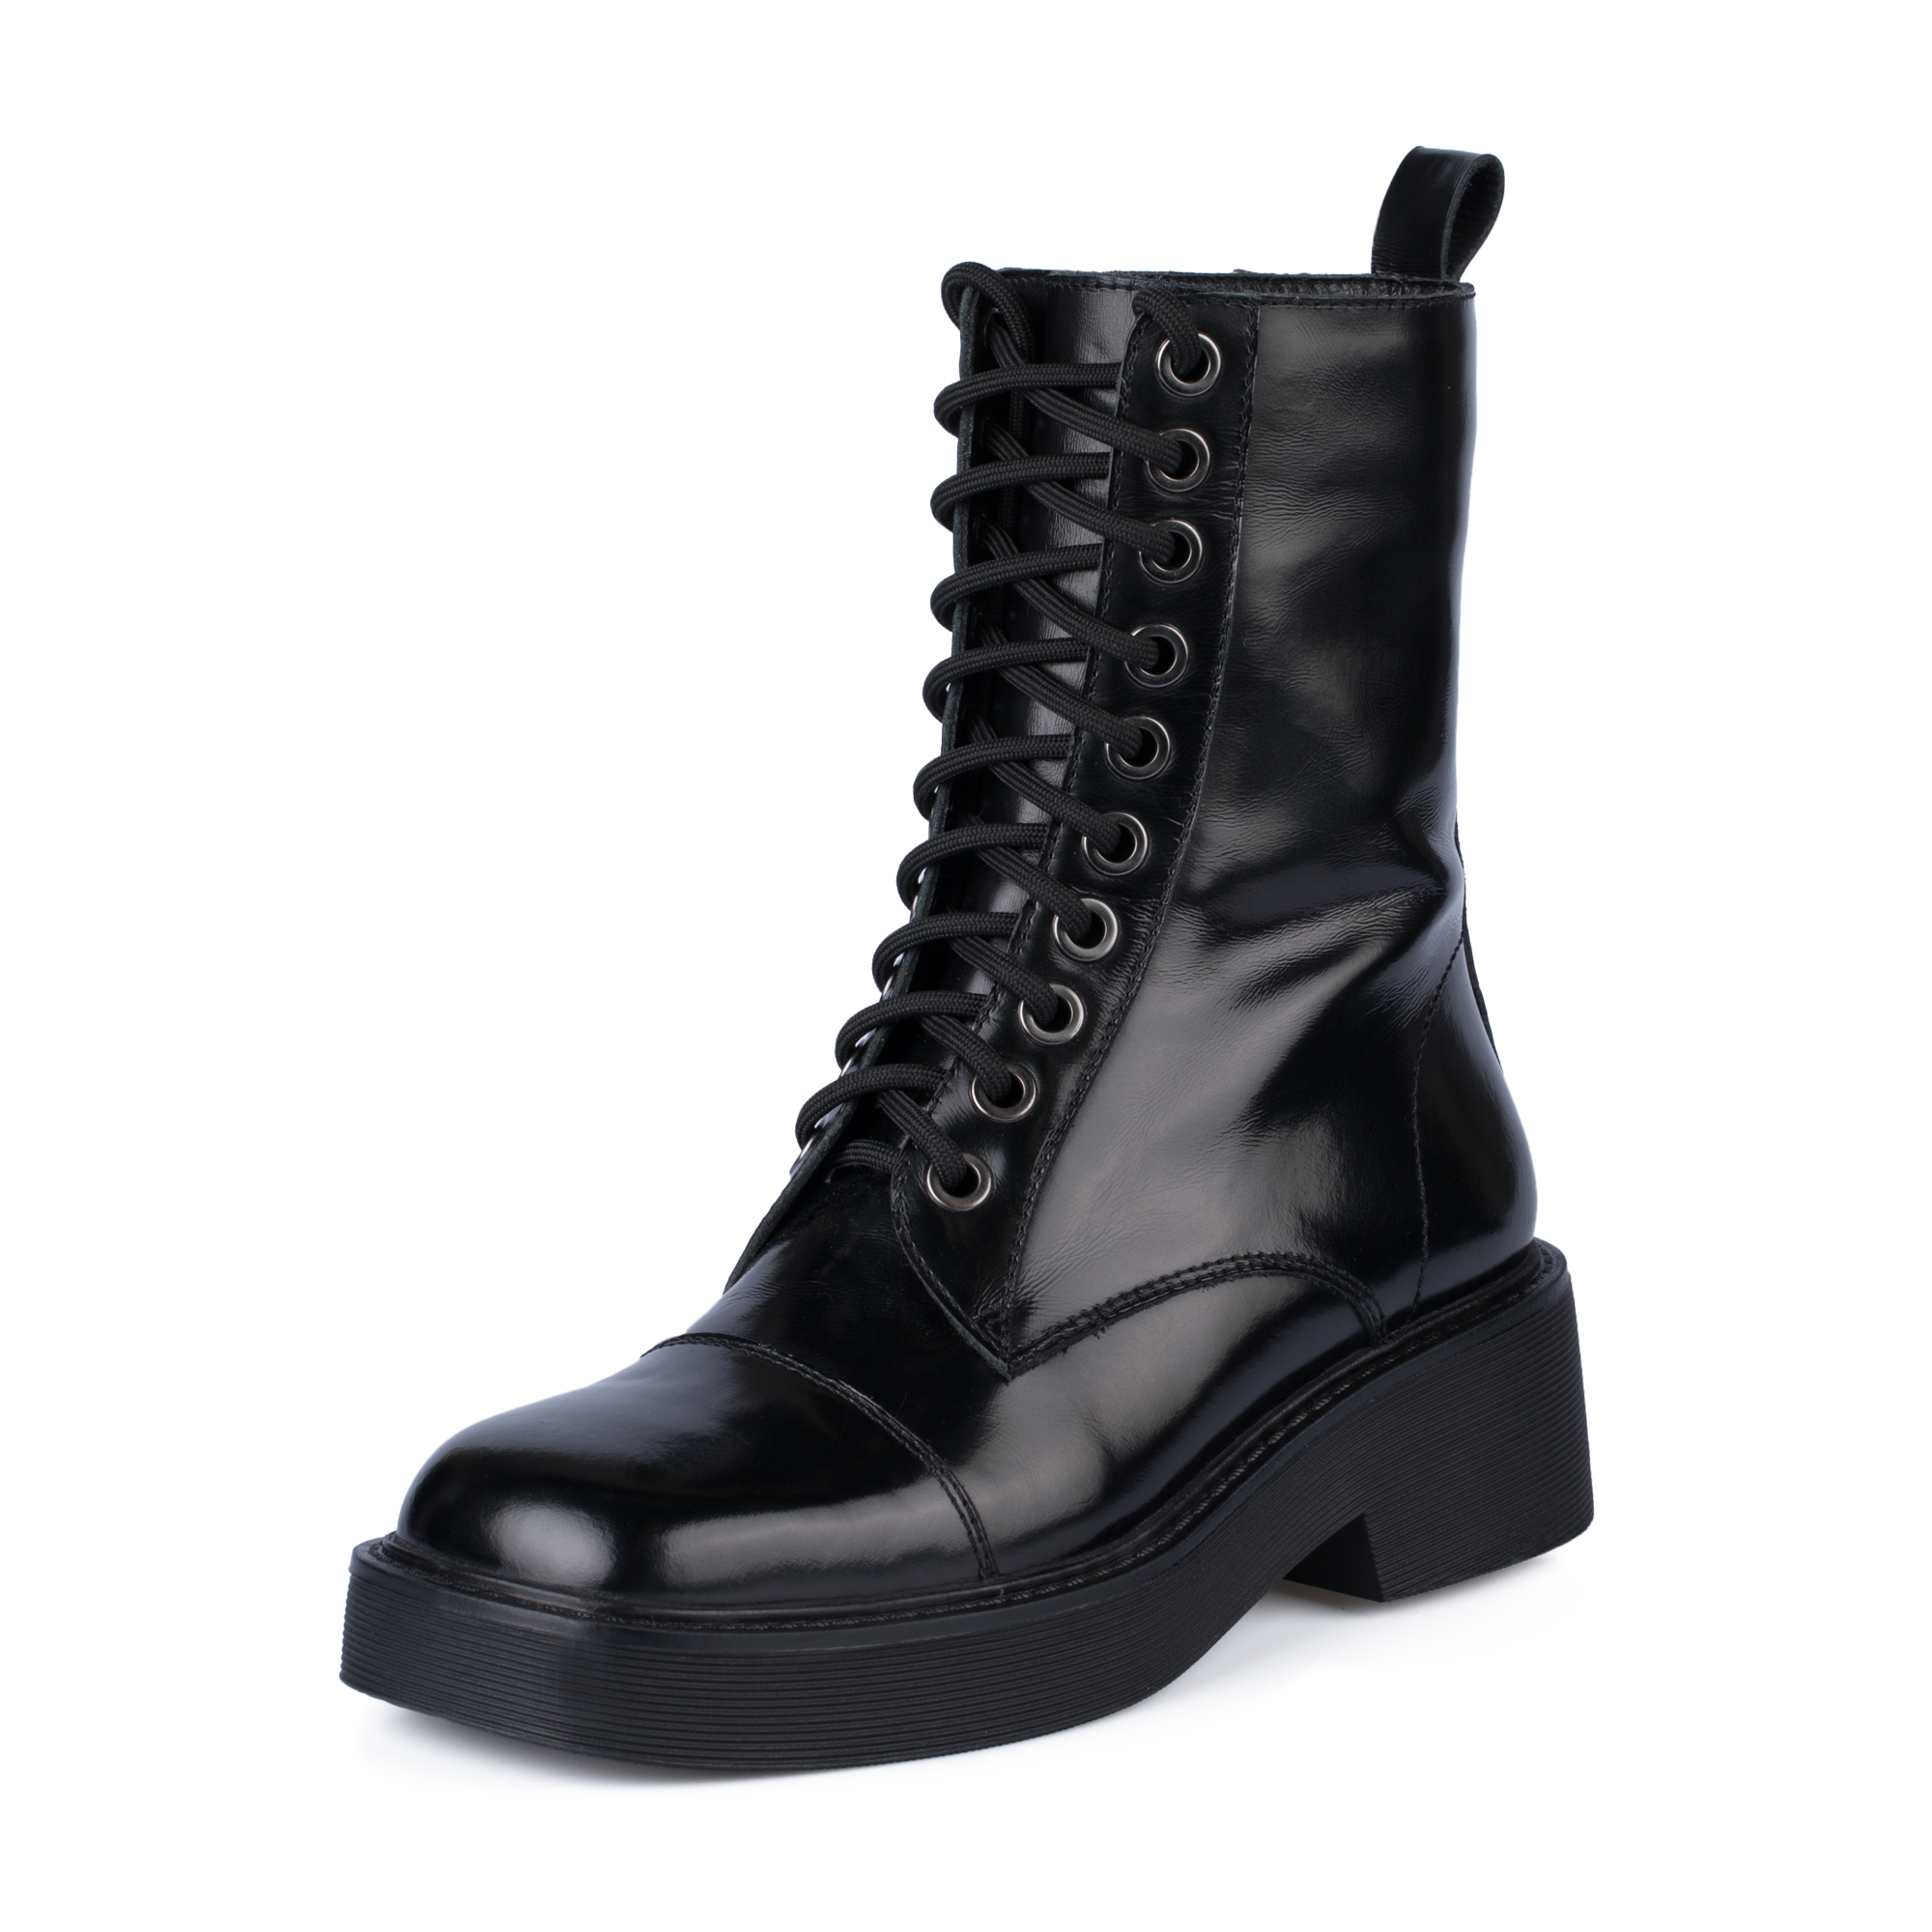 Ботинки Thomas Munz 126-400A-2102, цвет черный, размер 40 - фото 2